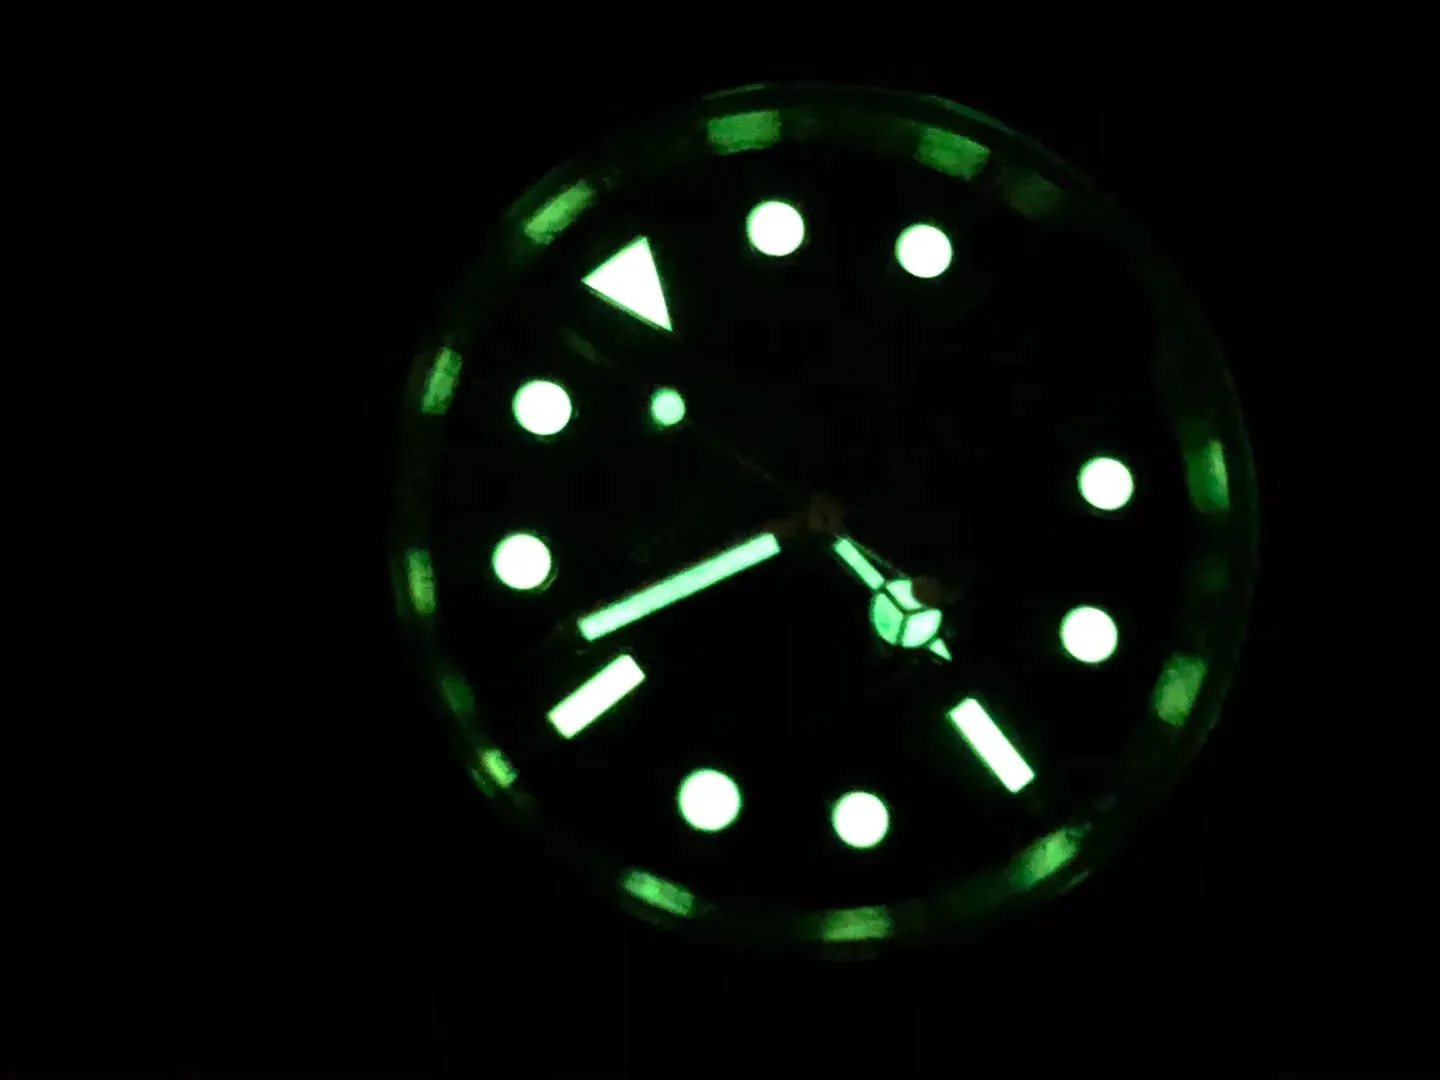 Super 43 montre DE luxe Beijing 2813 uurwerk automatisch horloge 40 mm 13 mm geraffineerde stalen kast waterdicht 50 m Super lichtgevend276N